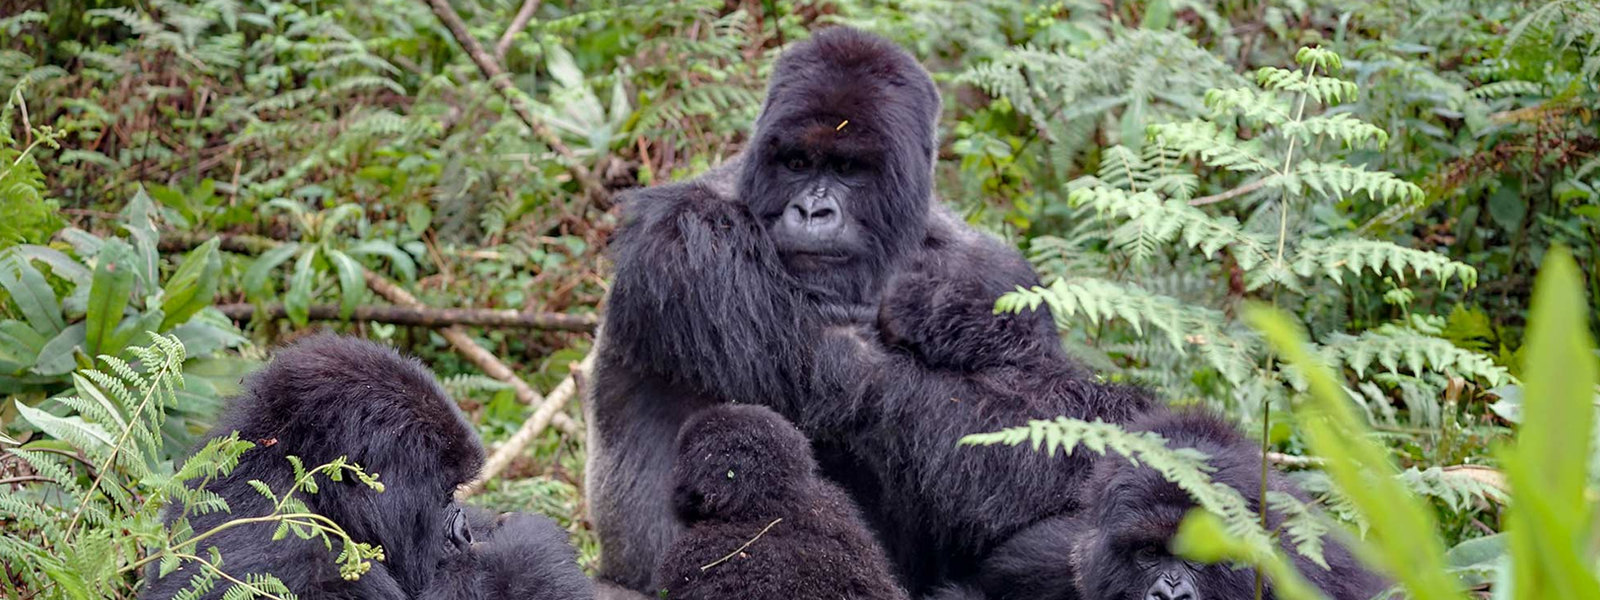 2 Days Rwanda Mountain Gorilla Trekking Safari